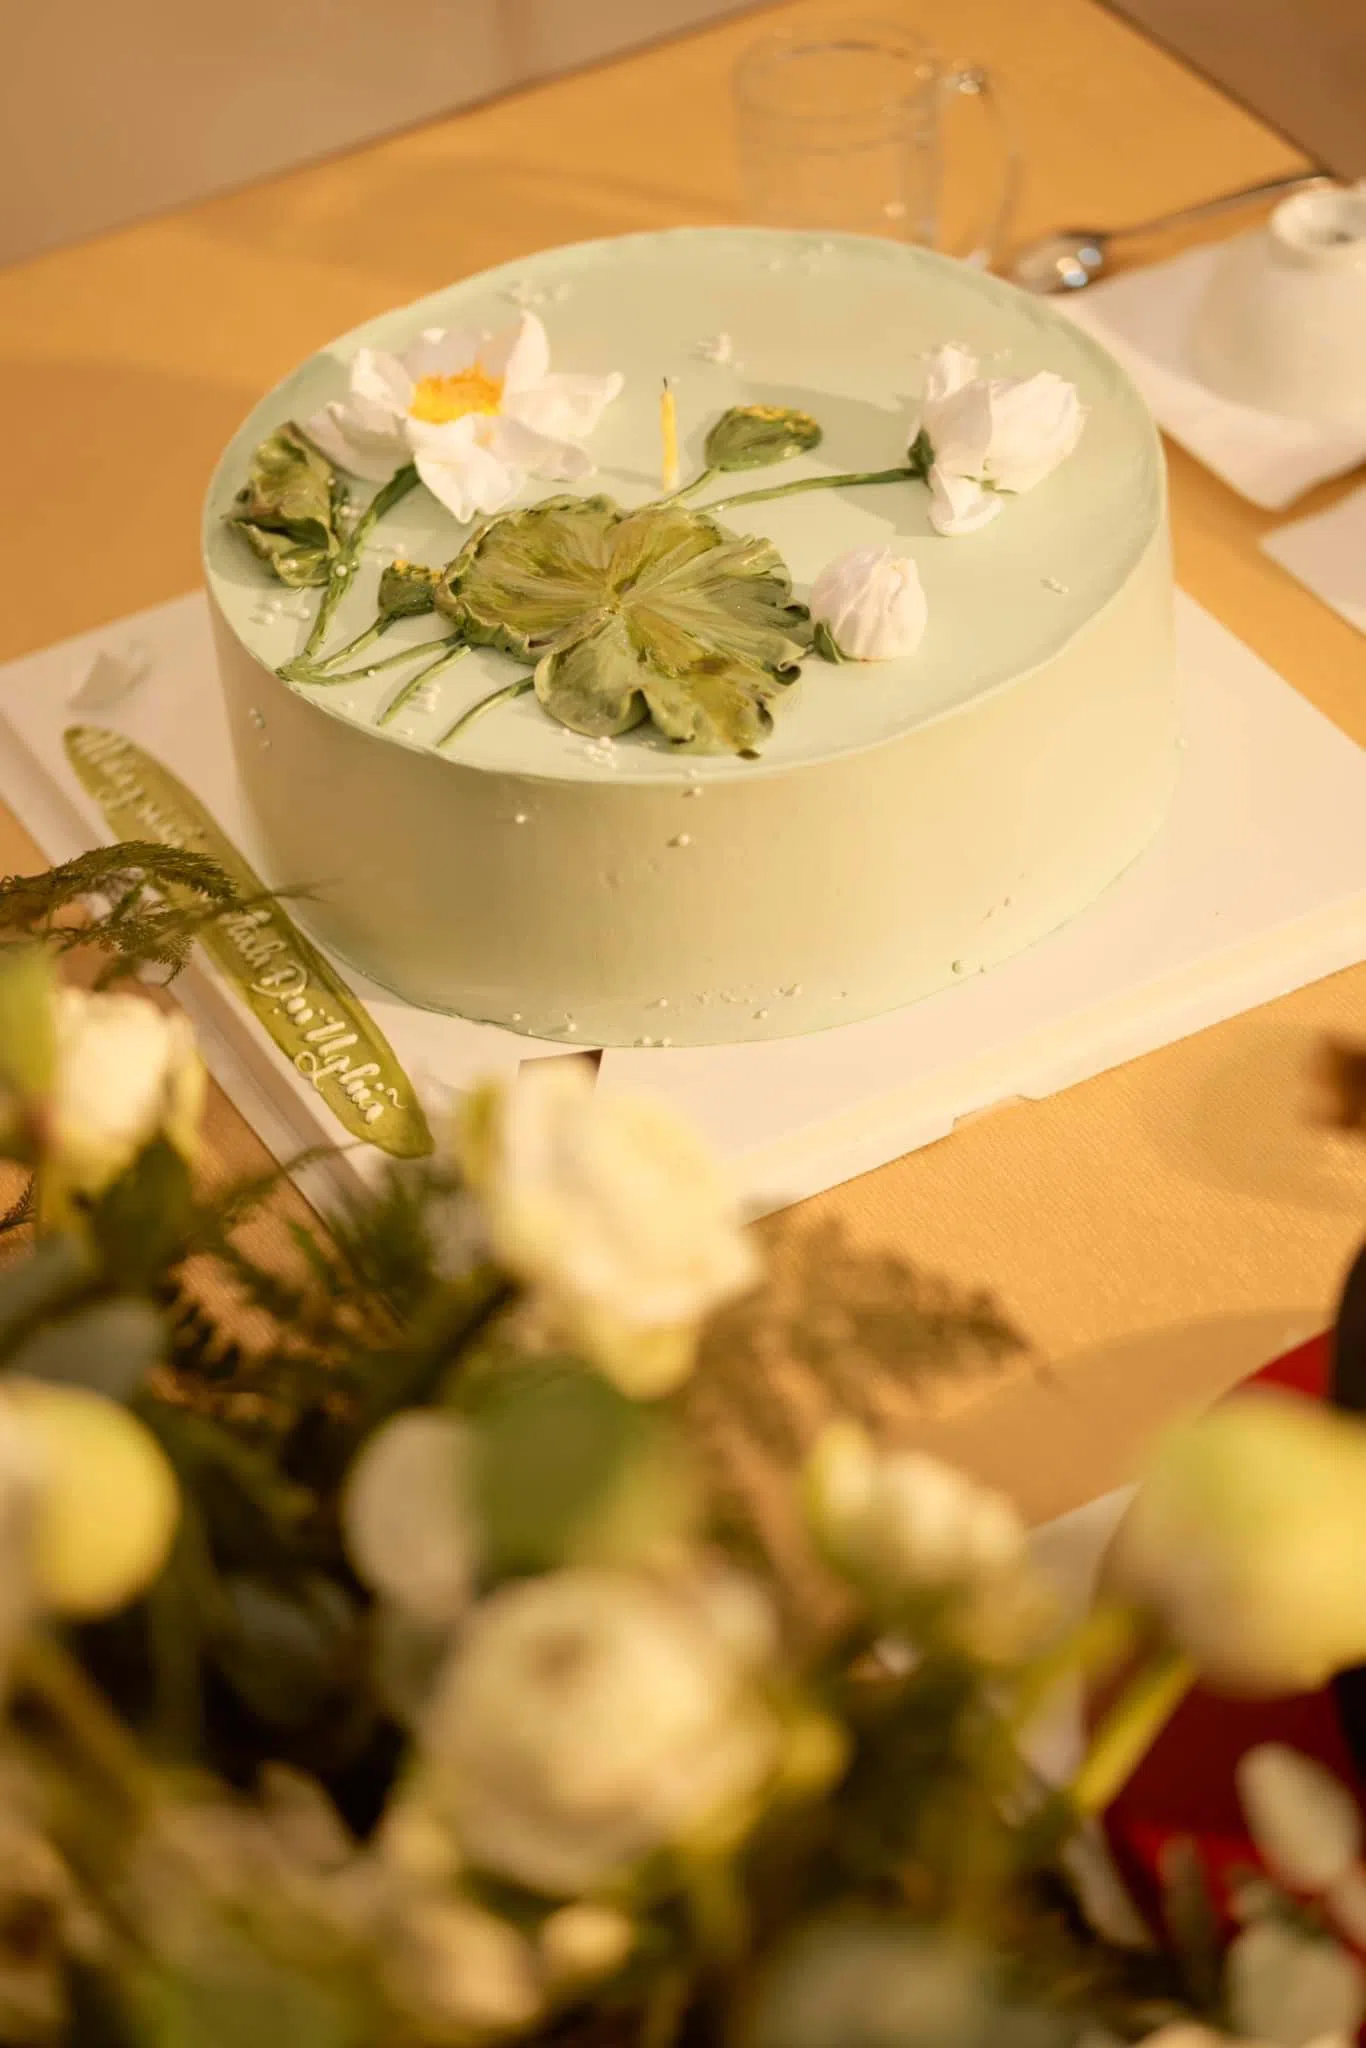 Nhật Kim Anh tổ chức sinh nhật đặc biệt từ 500 bông sen trắng cho Đại Nghĩa